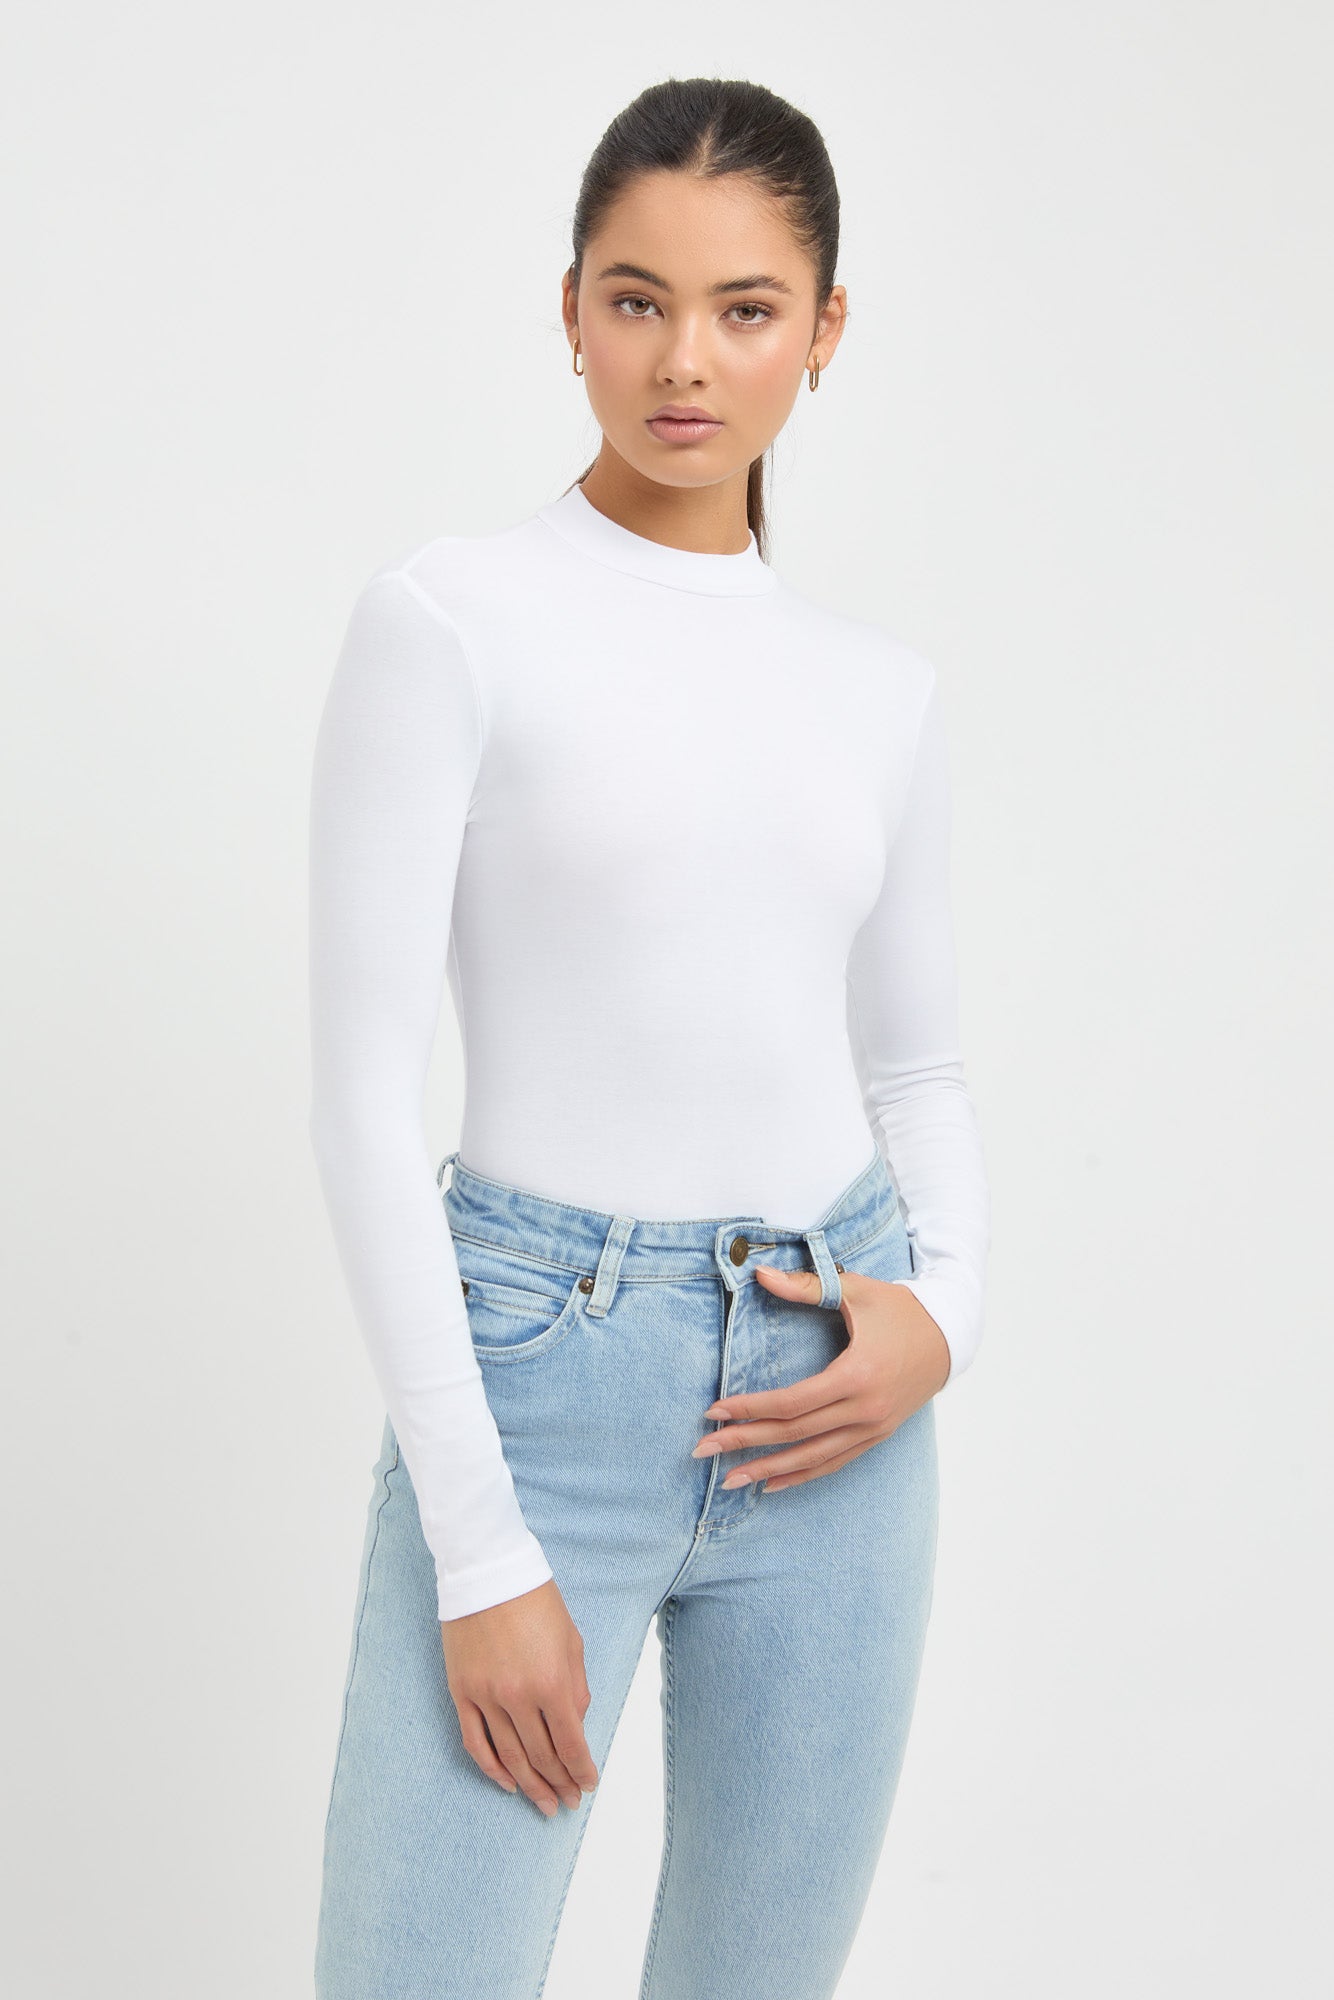 Buy Zara Bodysuit White Online